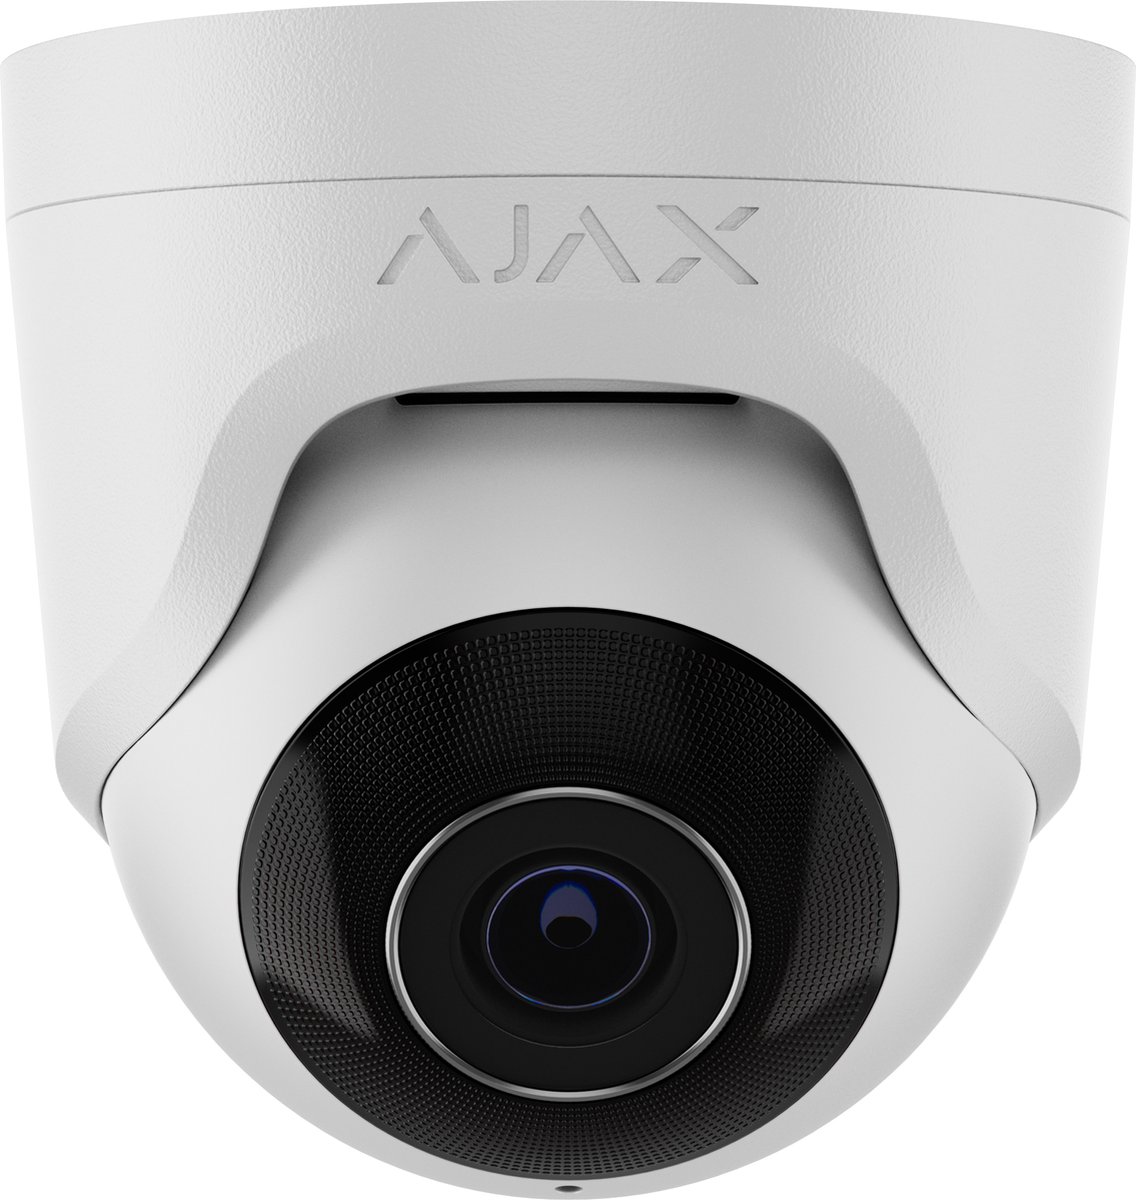 Ajax TurretCam 8MP Lens 4.0 Wit